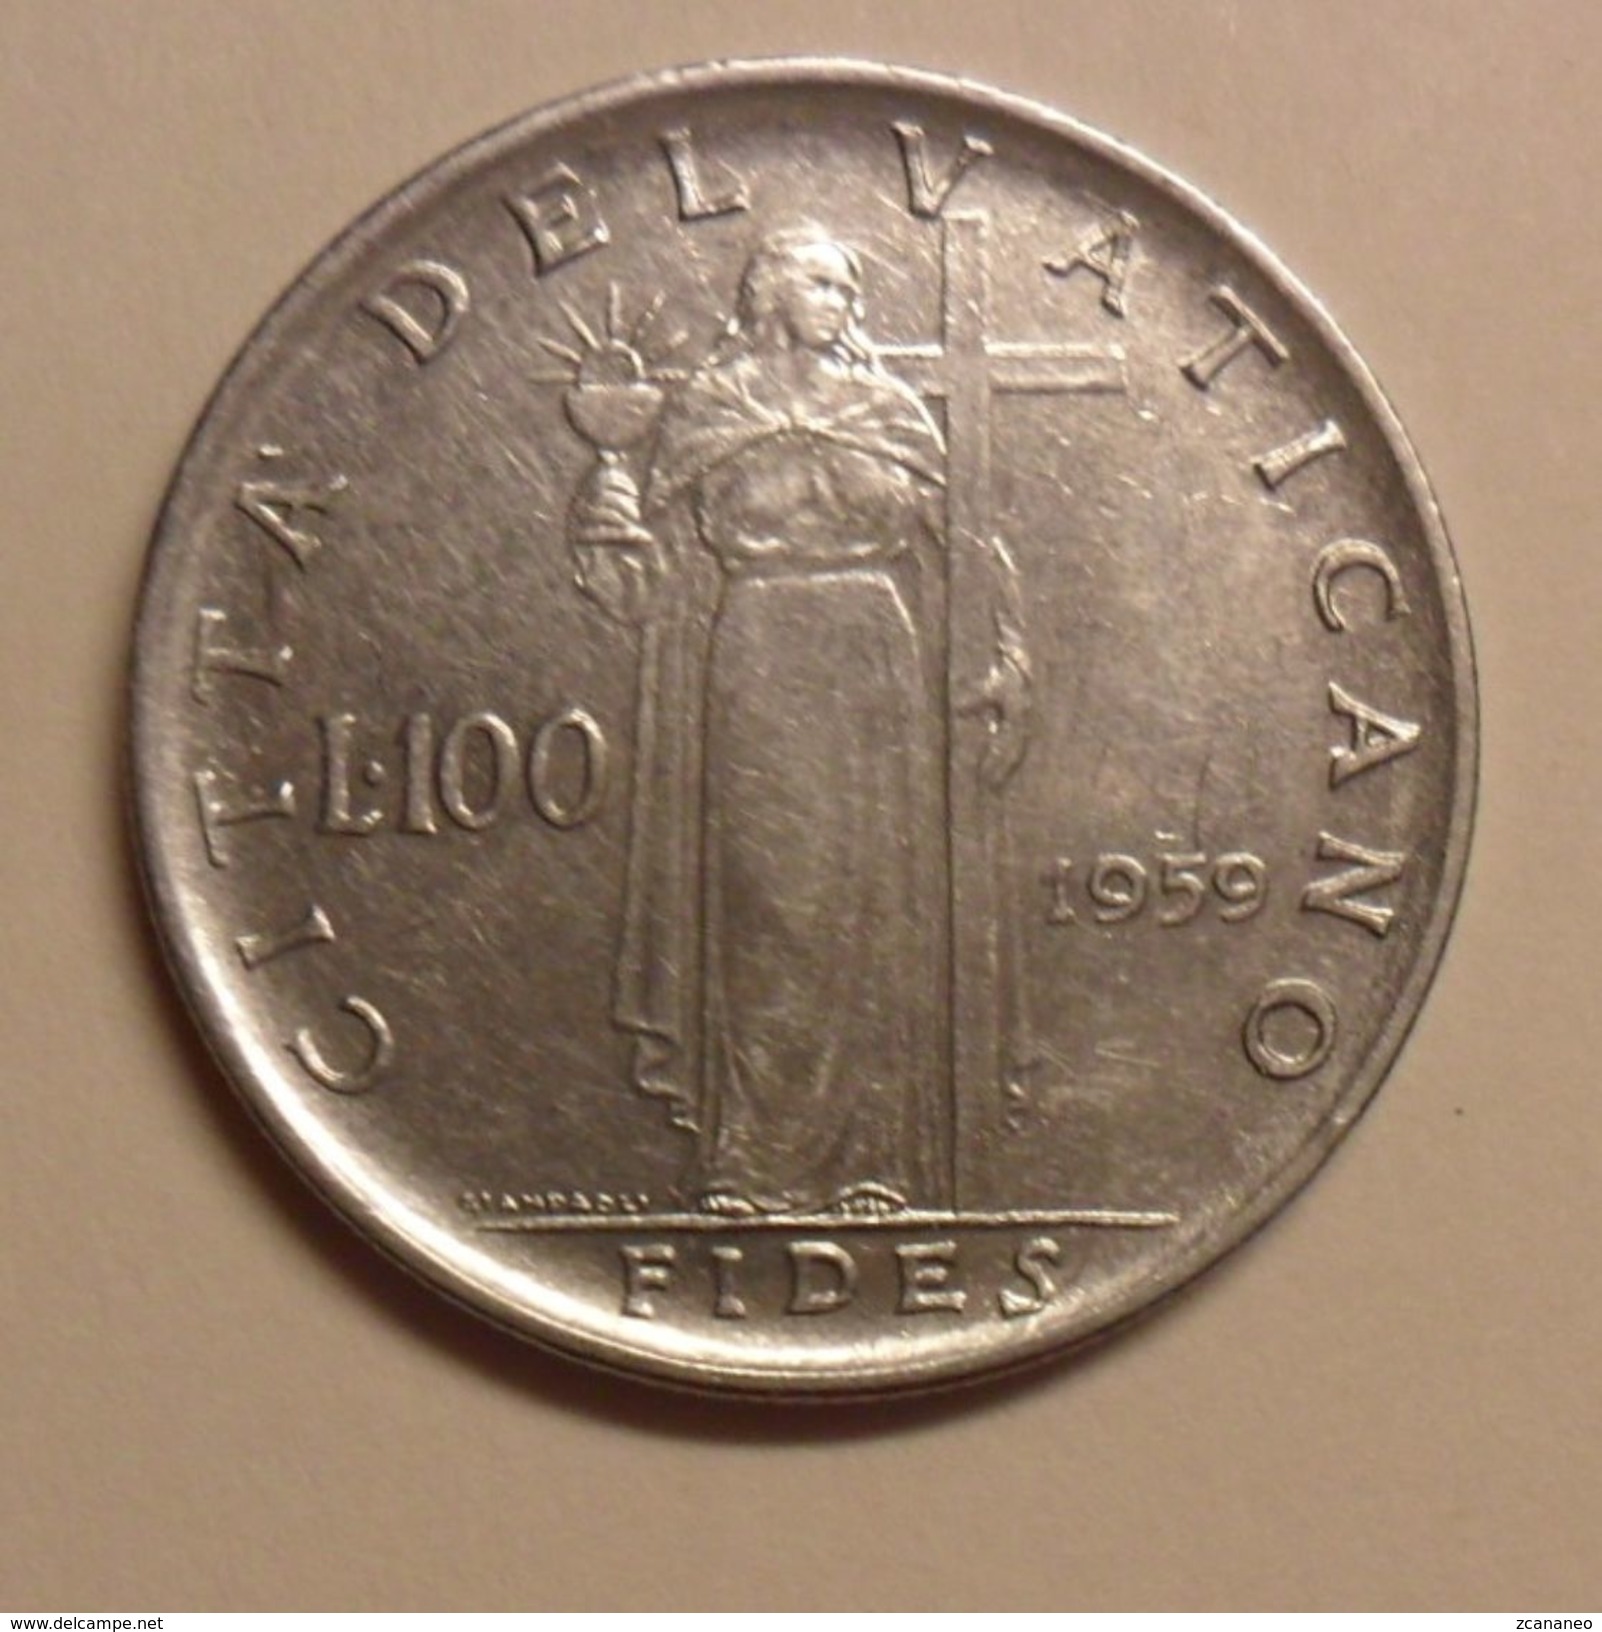 100 LIRE DEL VATICANO 1959 DI GIOVANNI XXIII° - - Vaticano